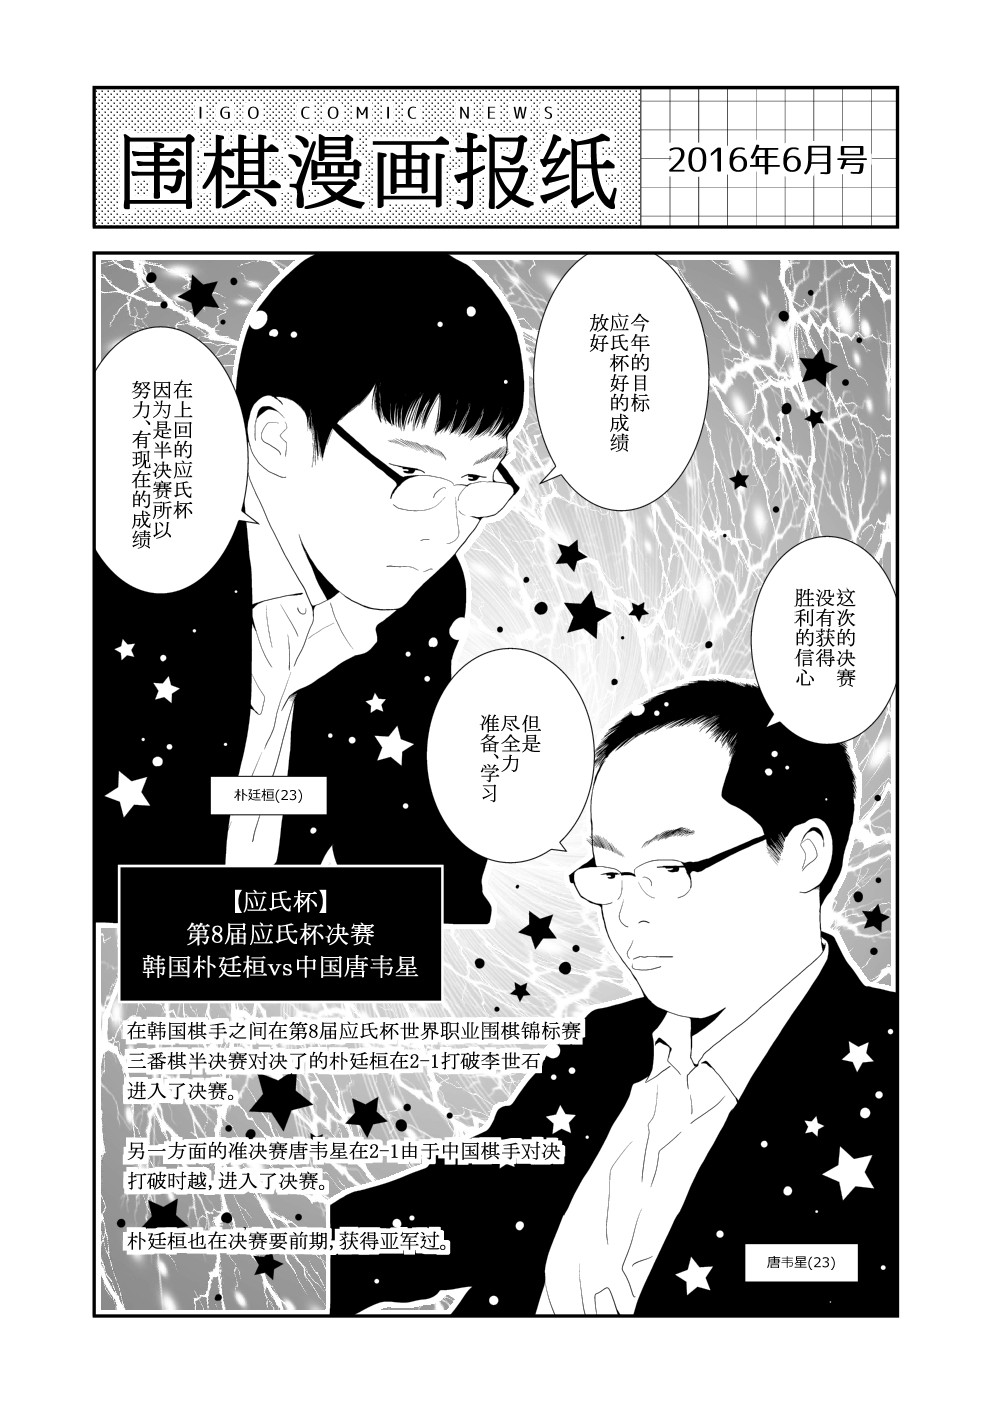 囲碁漫画新聞 16年6月号 韓国語版 中国語版有り Nitro15